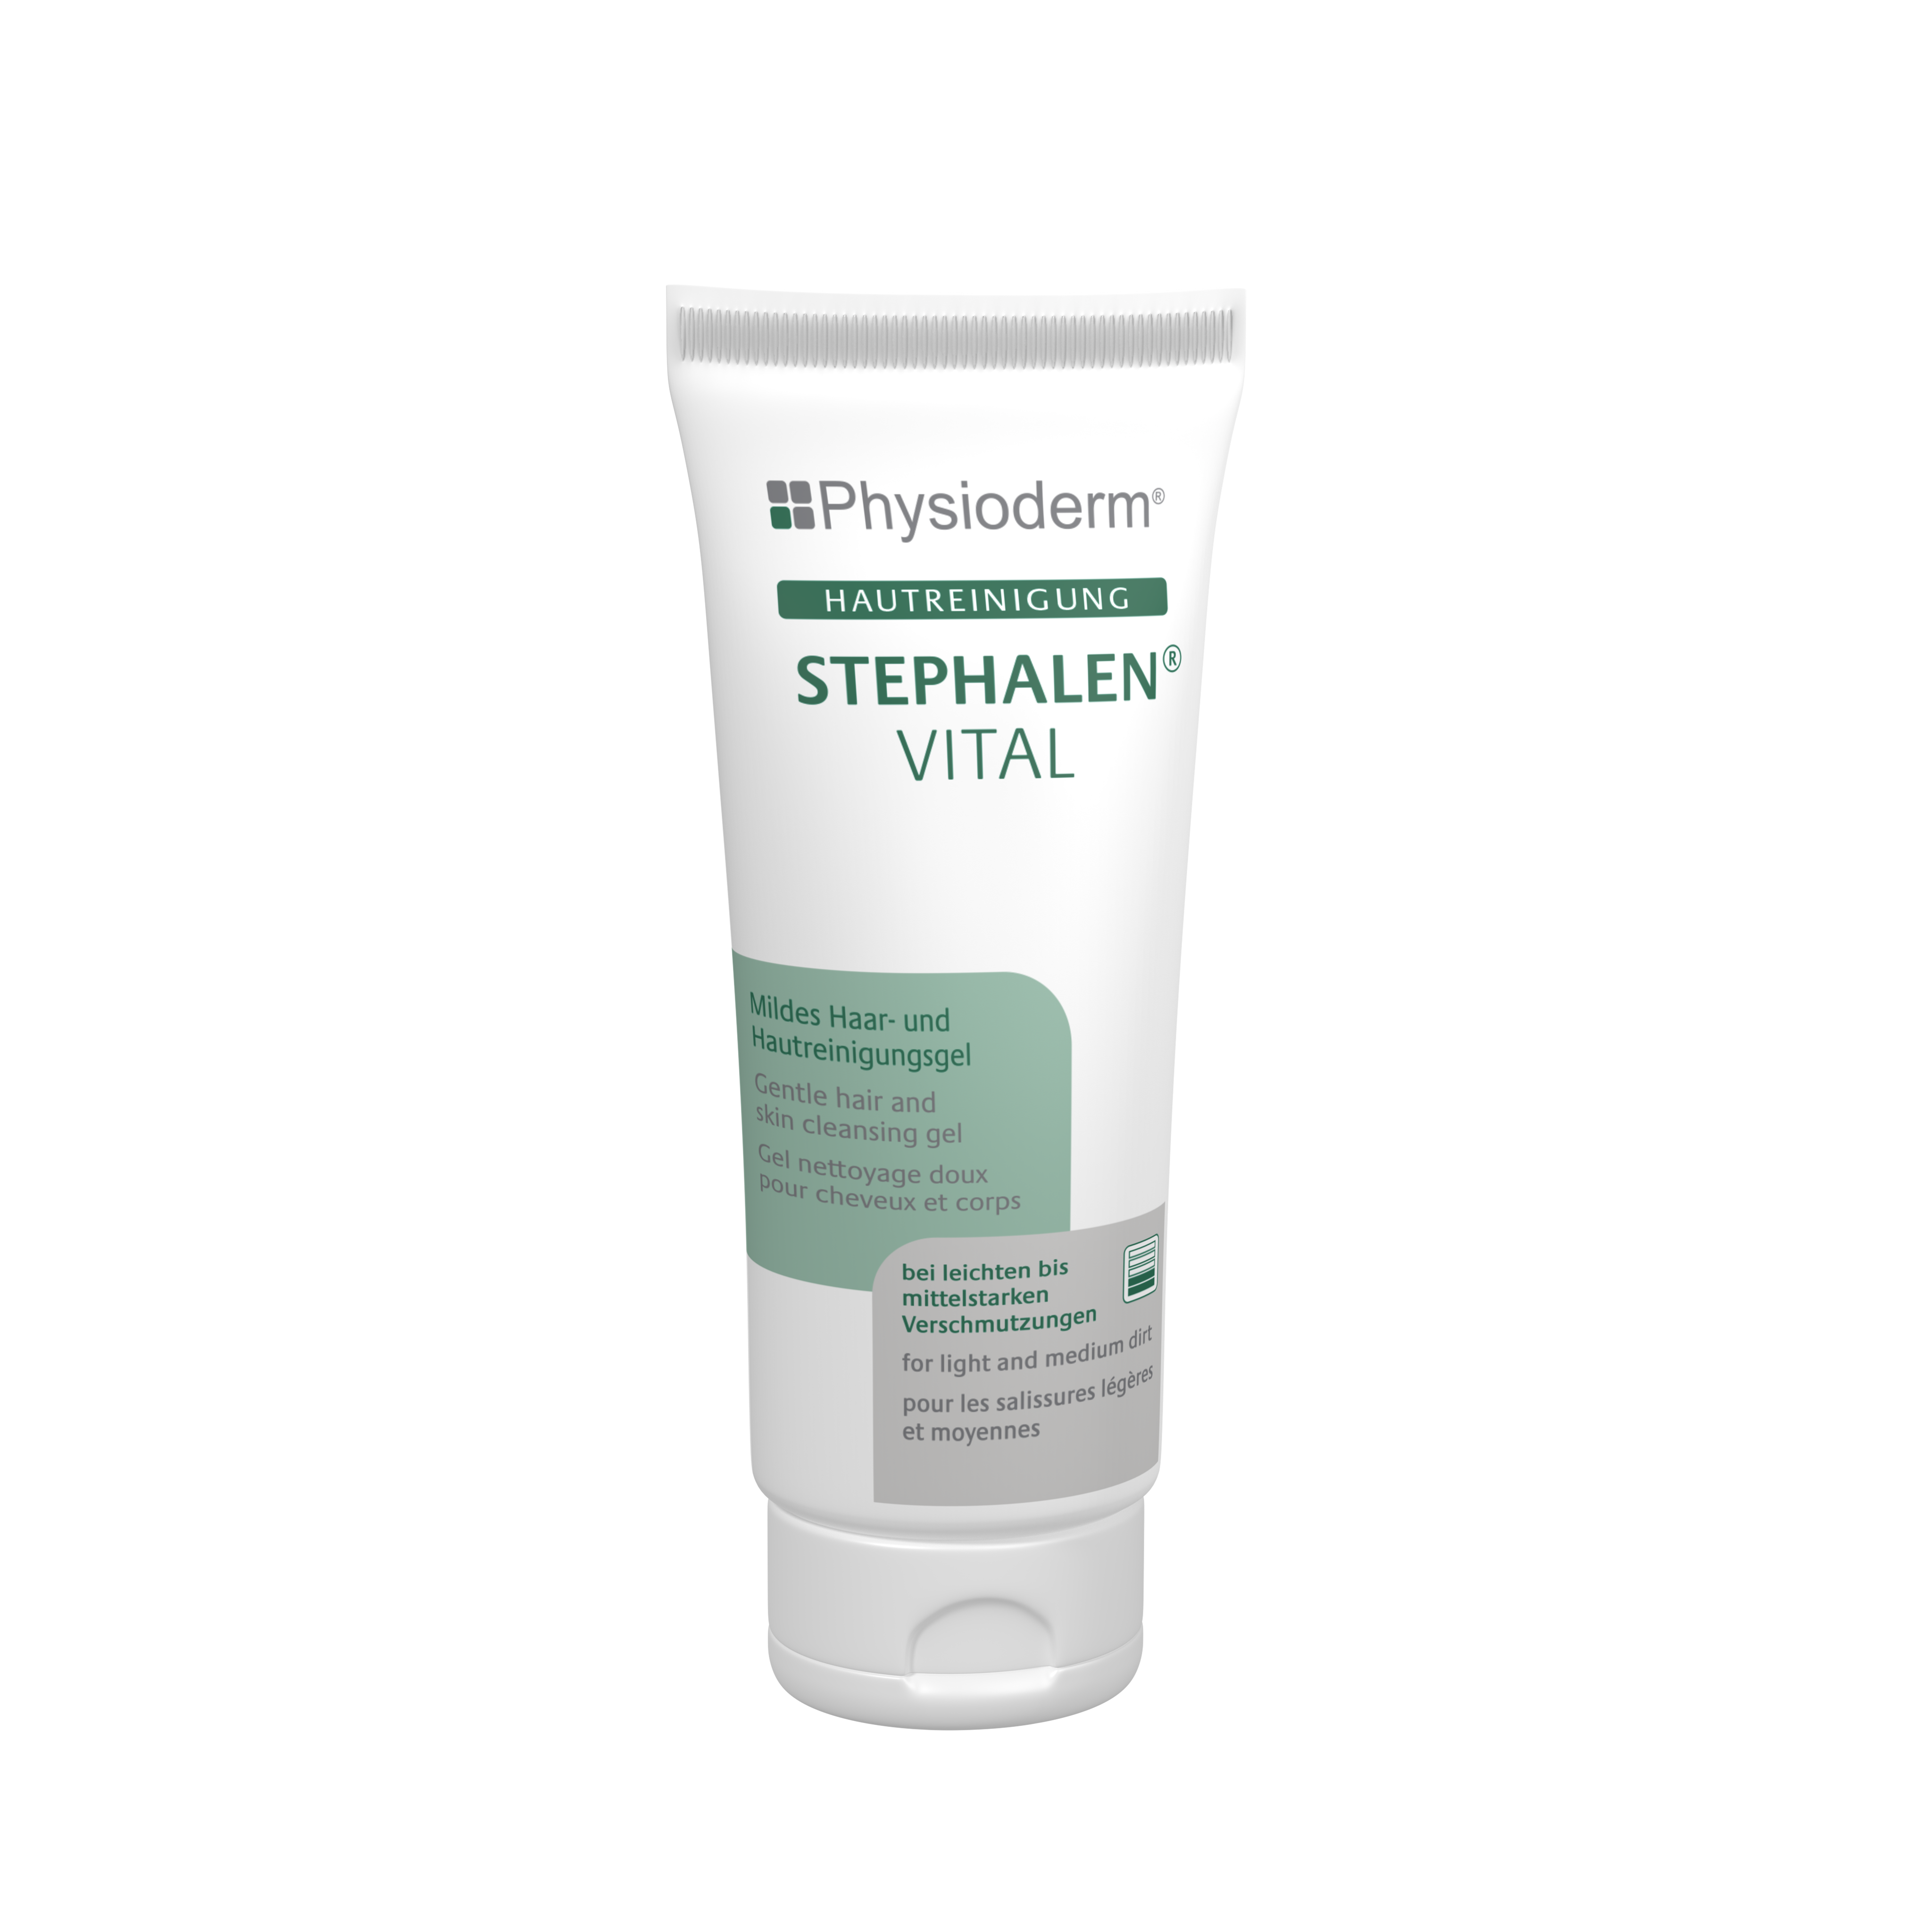  Physioderm Stephalen Vital 2000 & 200ML (Hair&Face Cleansing)